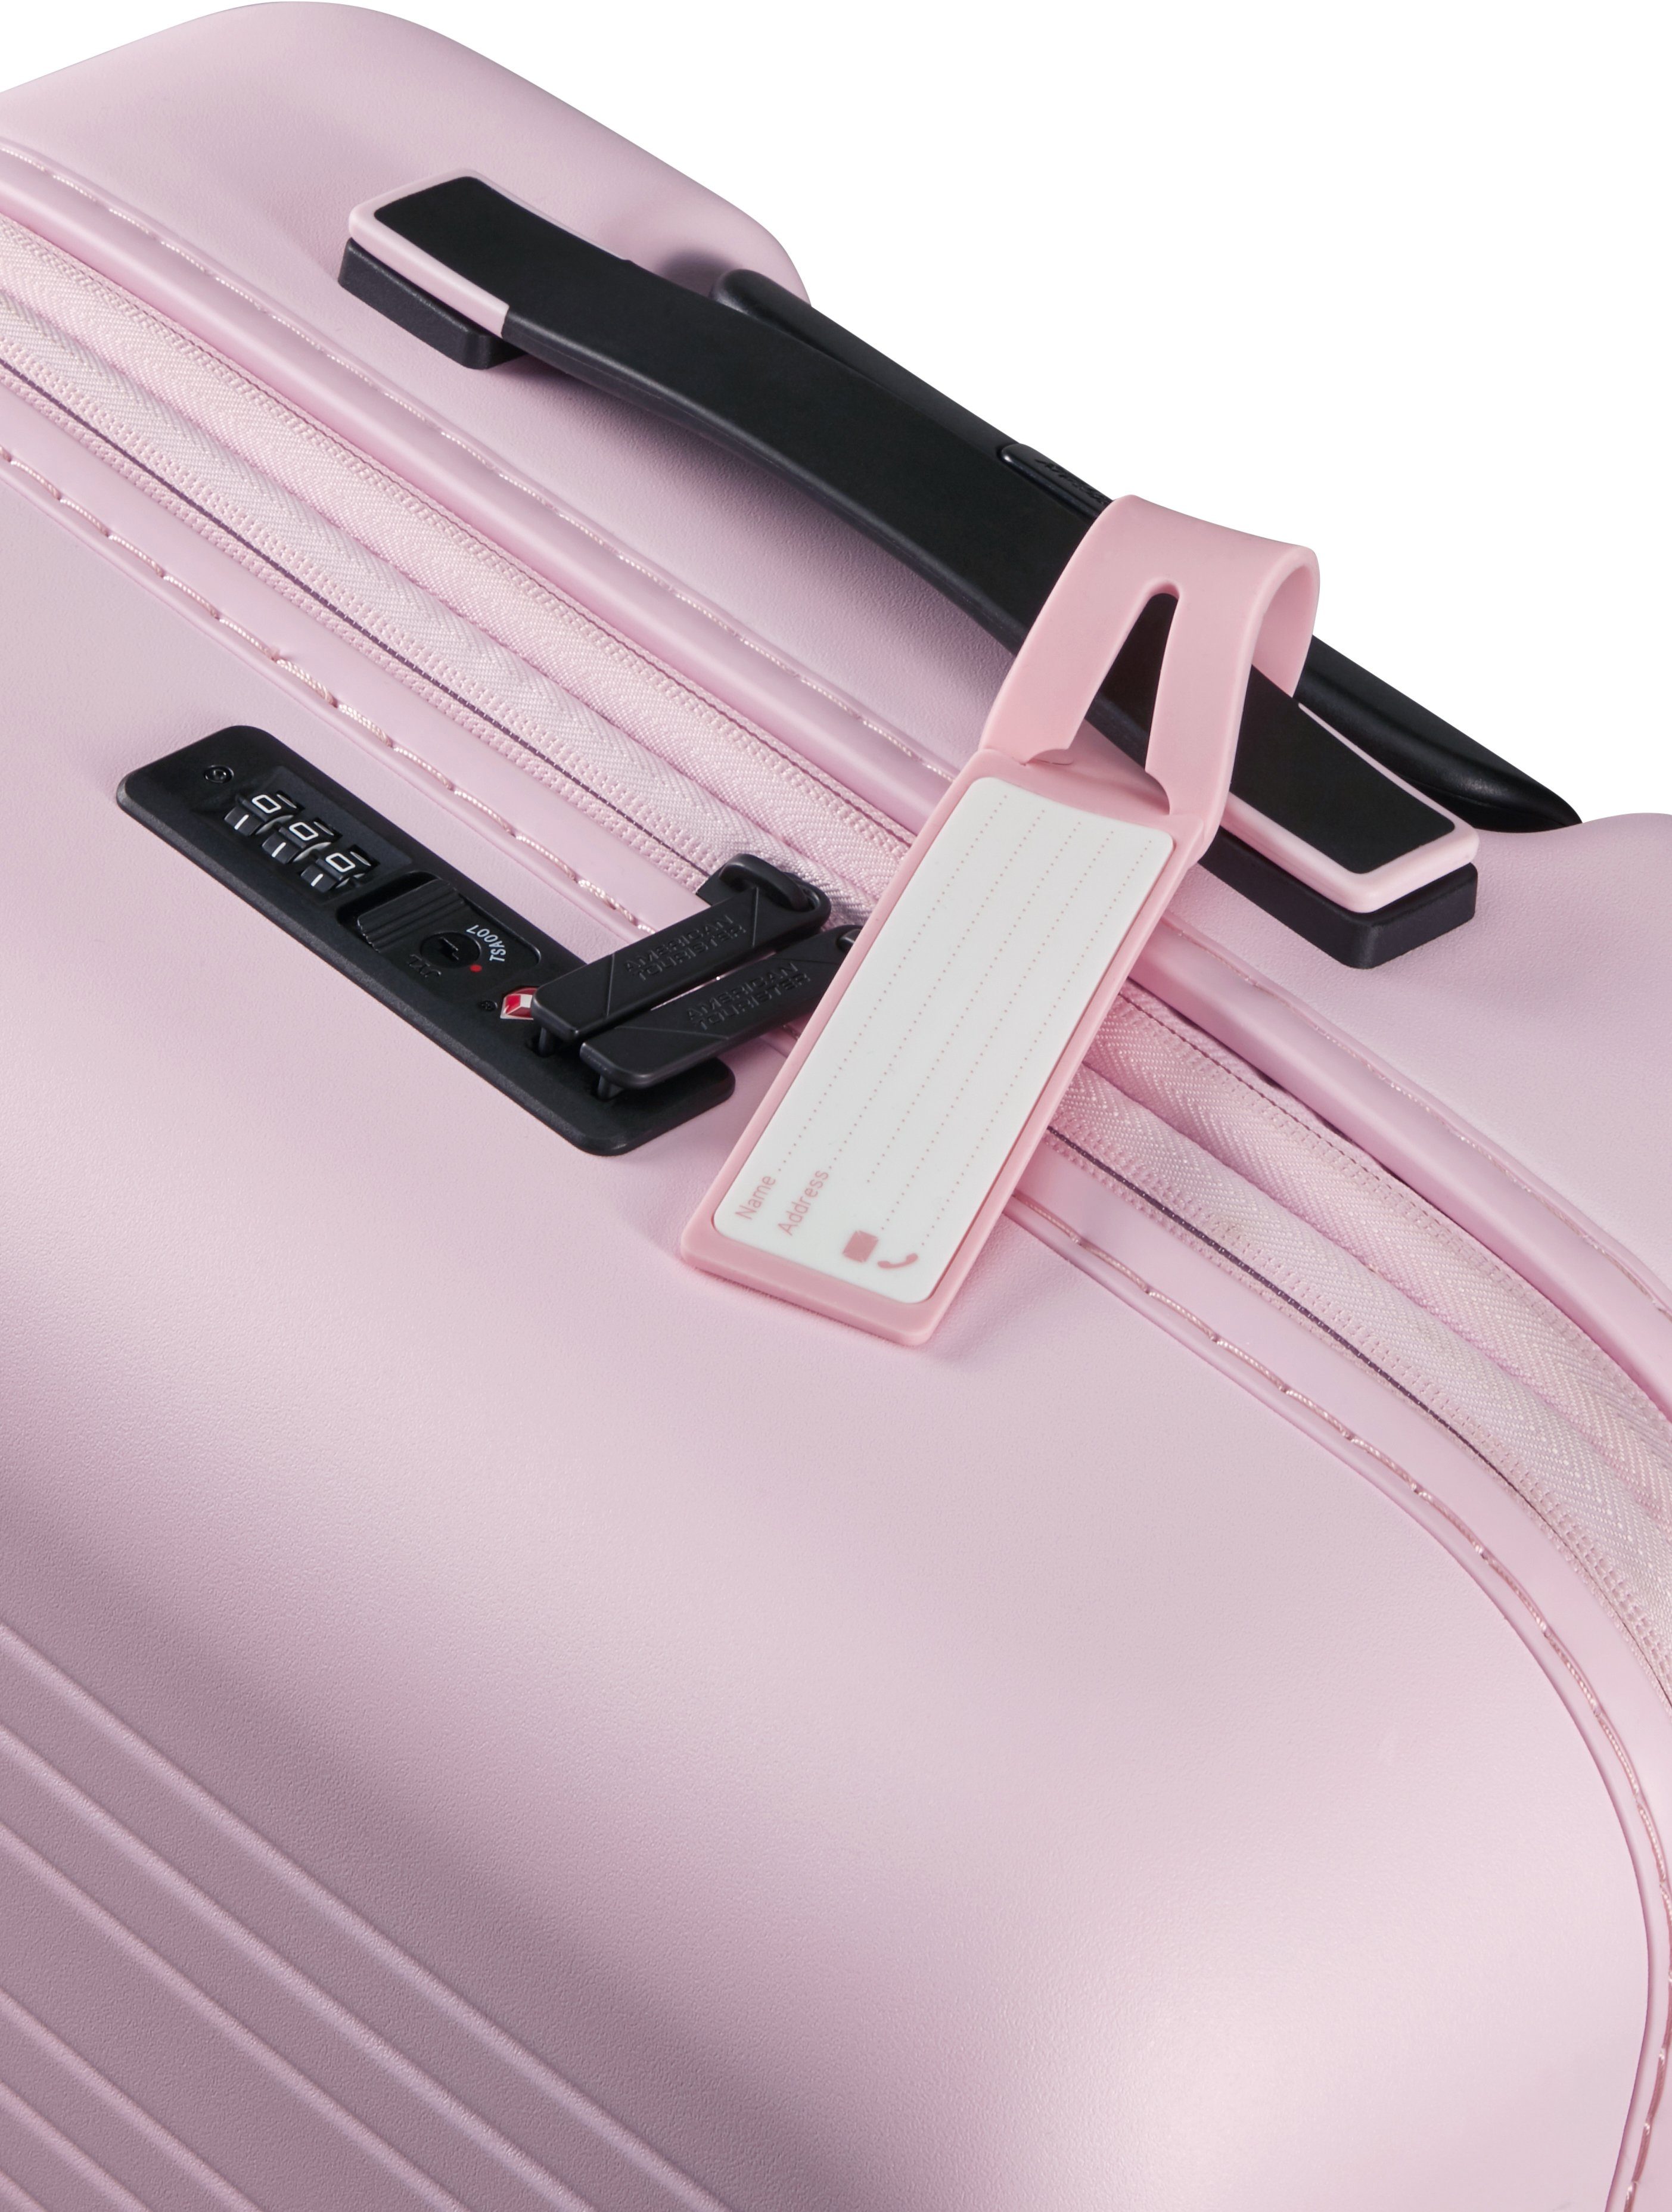 67 Soft American Volumenerweiterung Pink 4 Tourister® cm, Hartschalen-Trolley Novastream, Rollen, mit